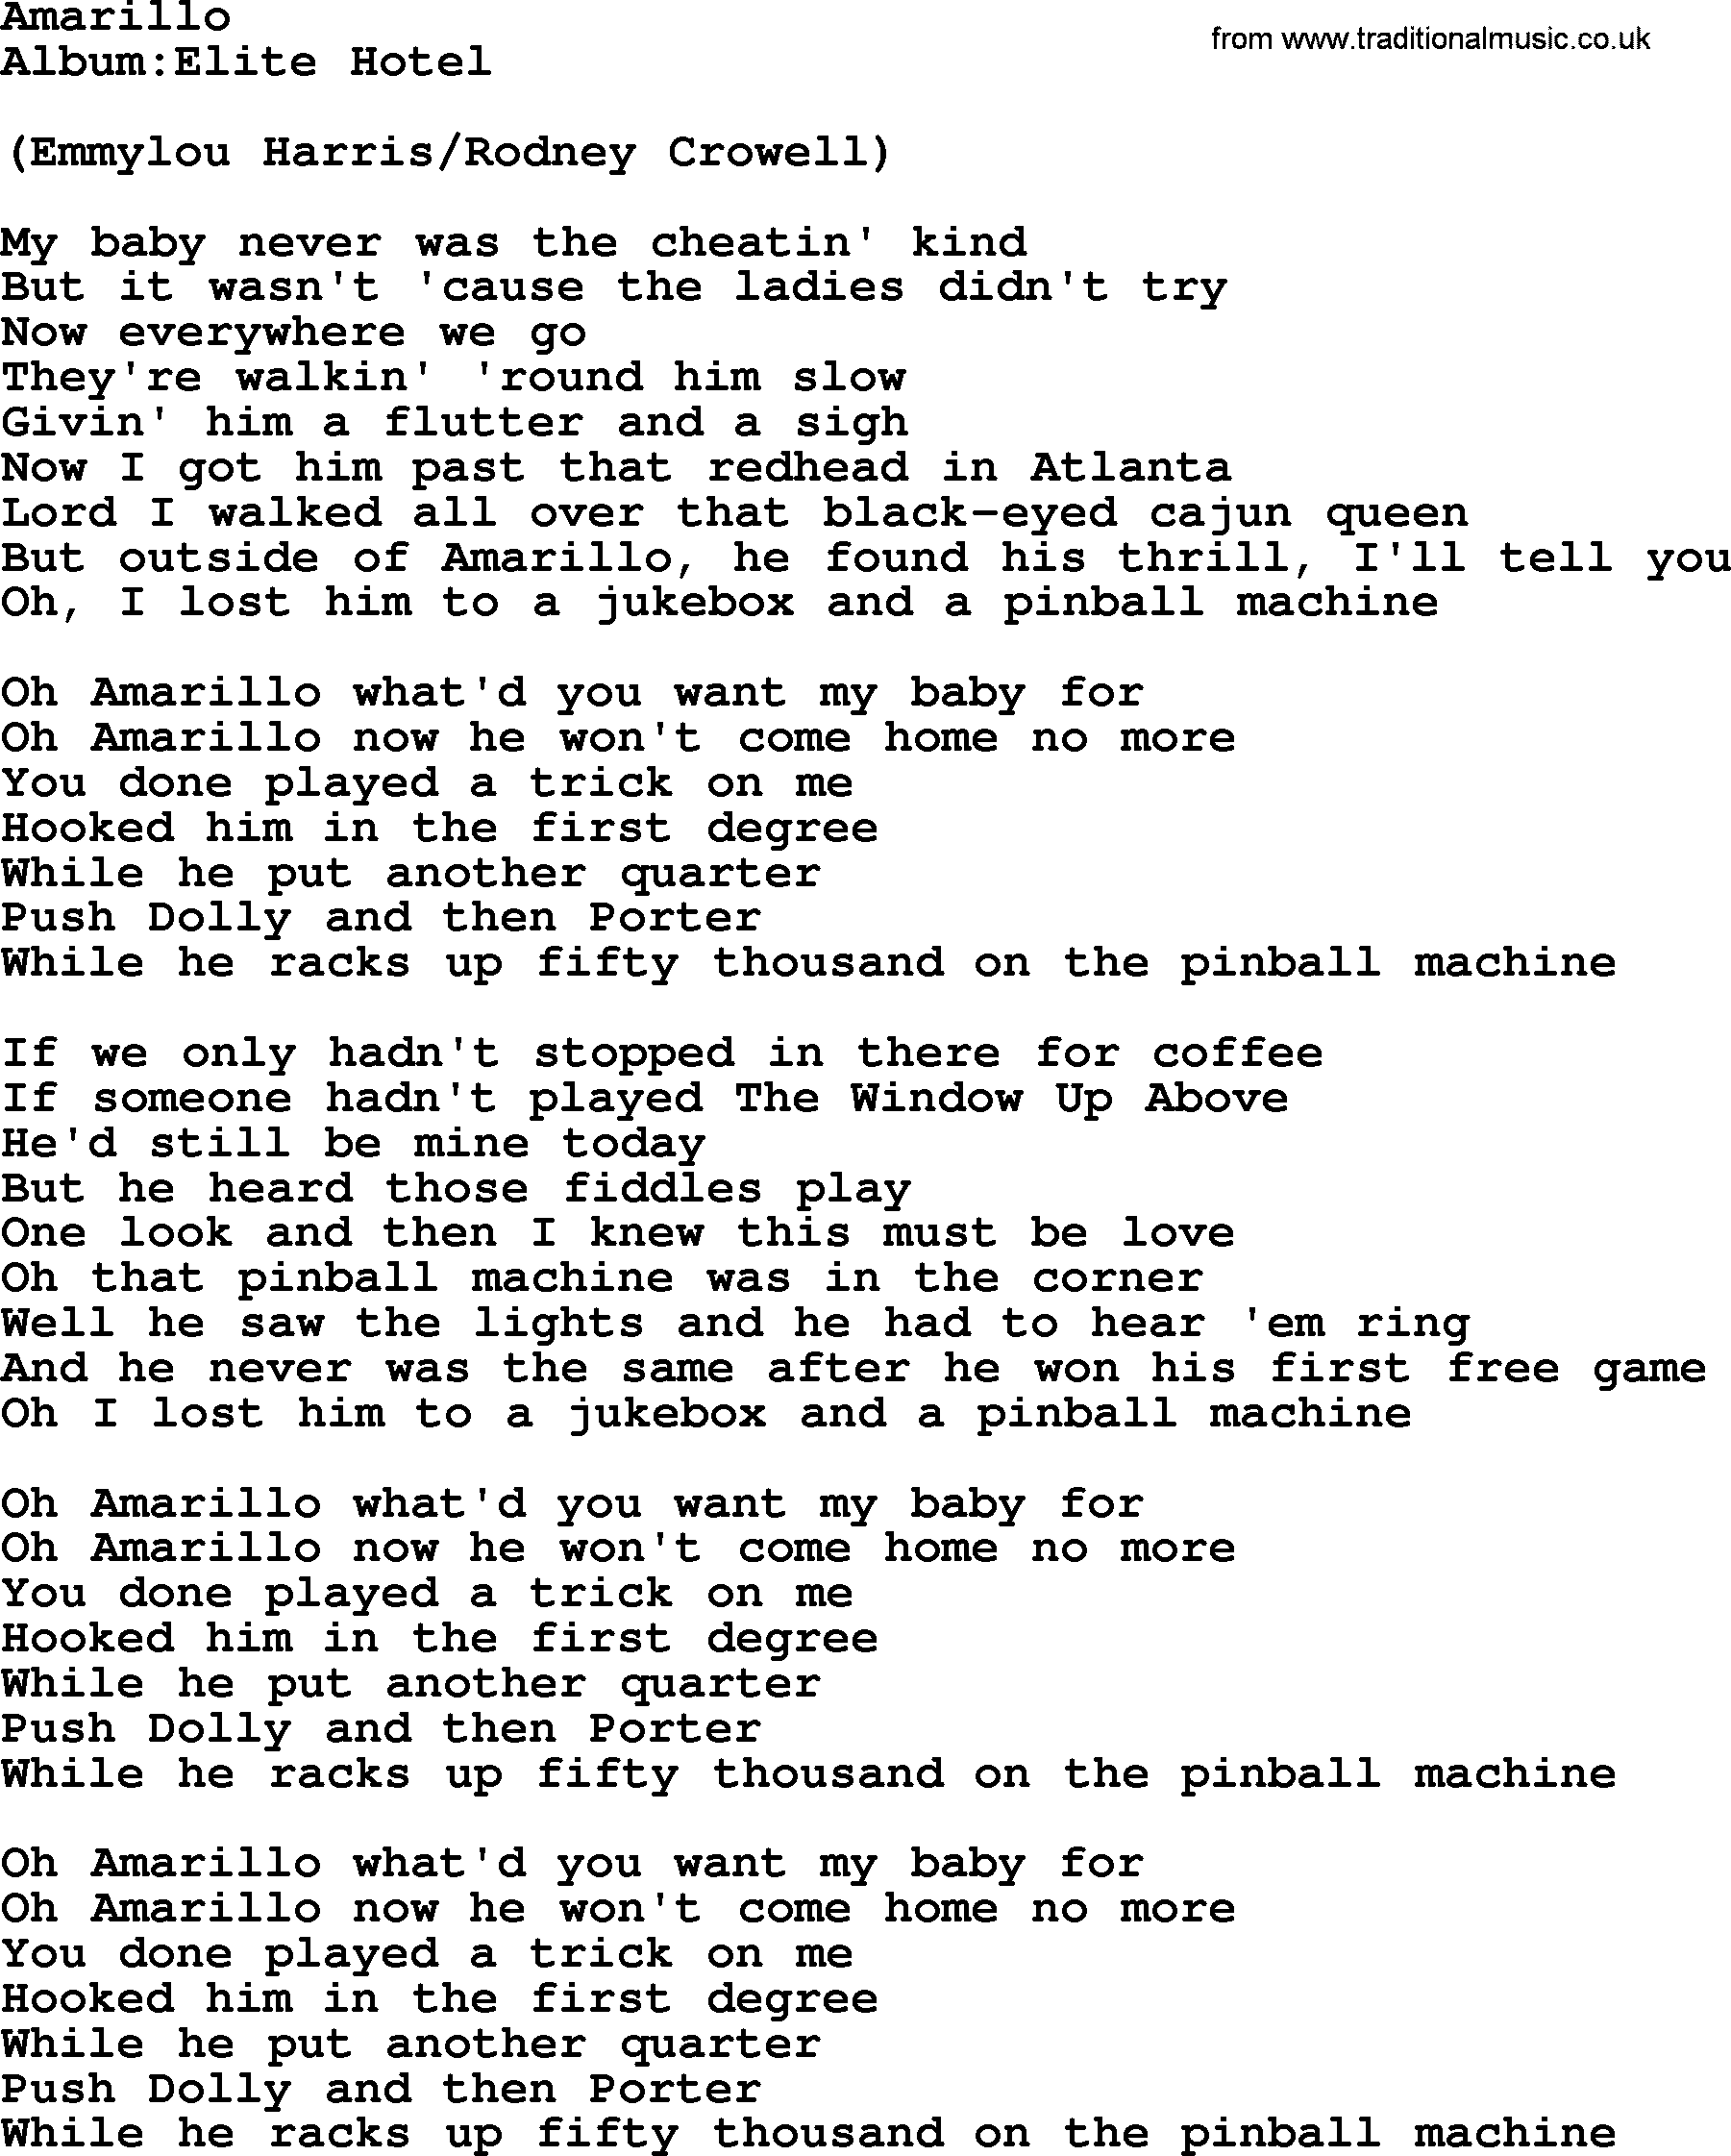 Emmylou Harris song: Amarillo lyrics